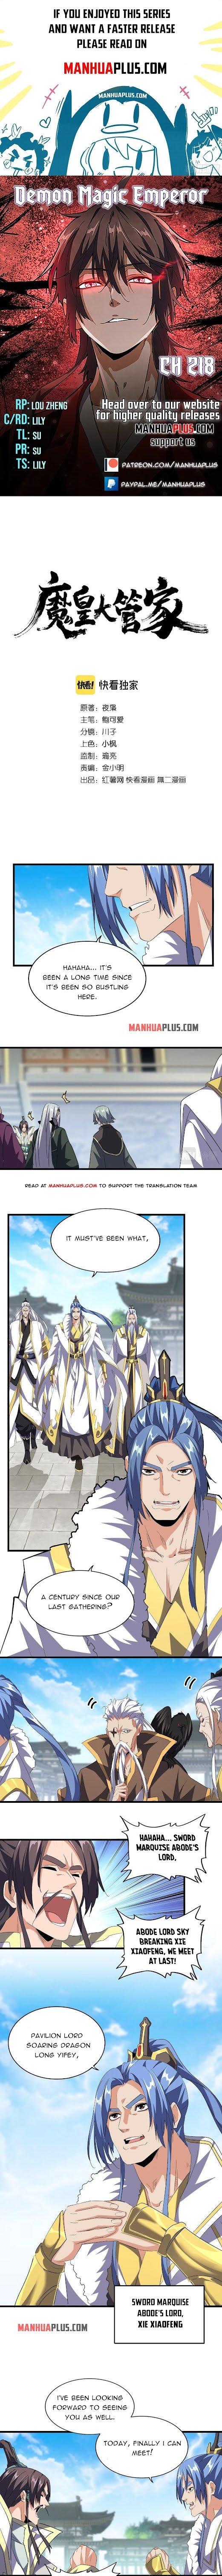 Magic Emperor Chapter 218 page 1 - Mangakakalot